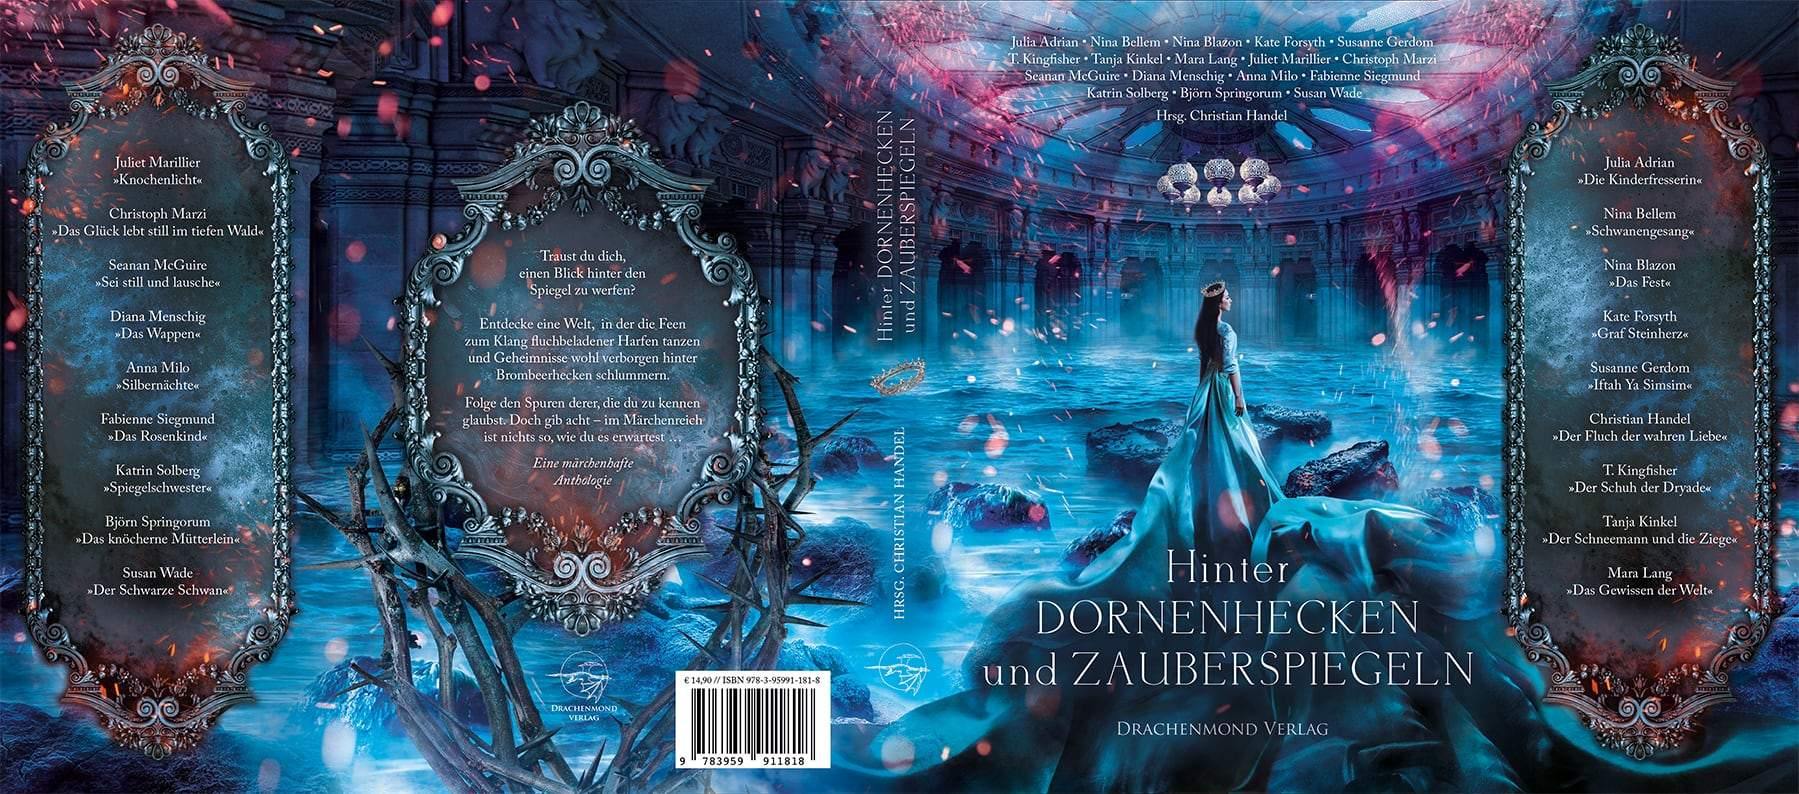 Hinter Dornenhecken und Zauberspiegeln - Christian Handel (Hrsg.) | Drachenmond Verlag